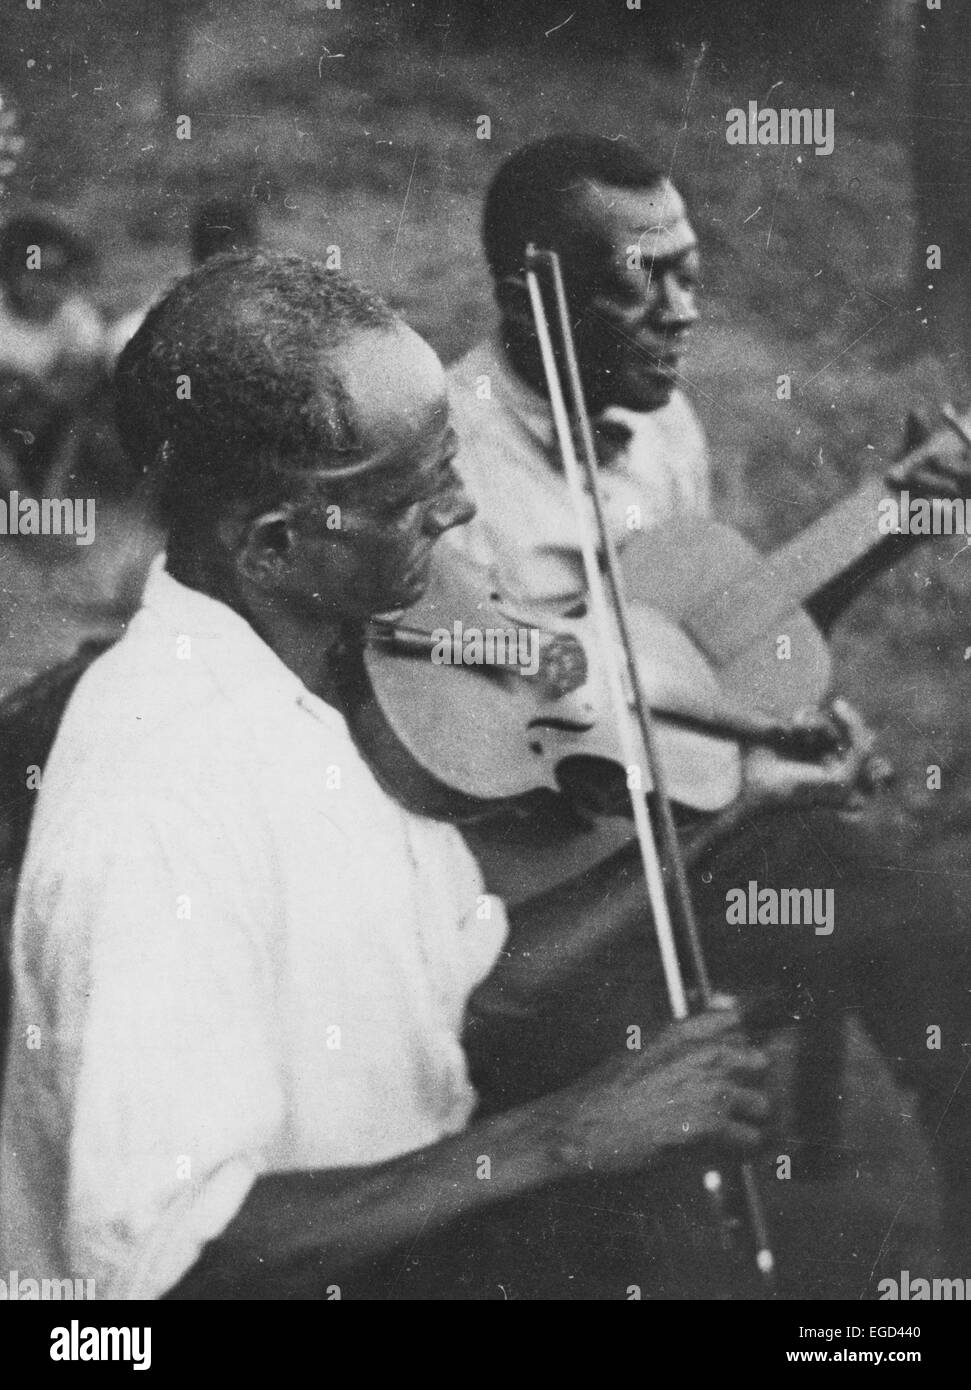 La chaîne des Stavin en jouant de la guitare et chante accompagné par un musicien au violon, Lafayette, Louisiane, Juin 1934 Banque D'Images